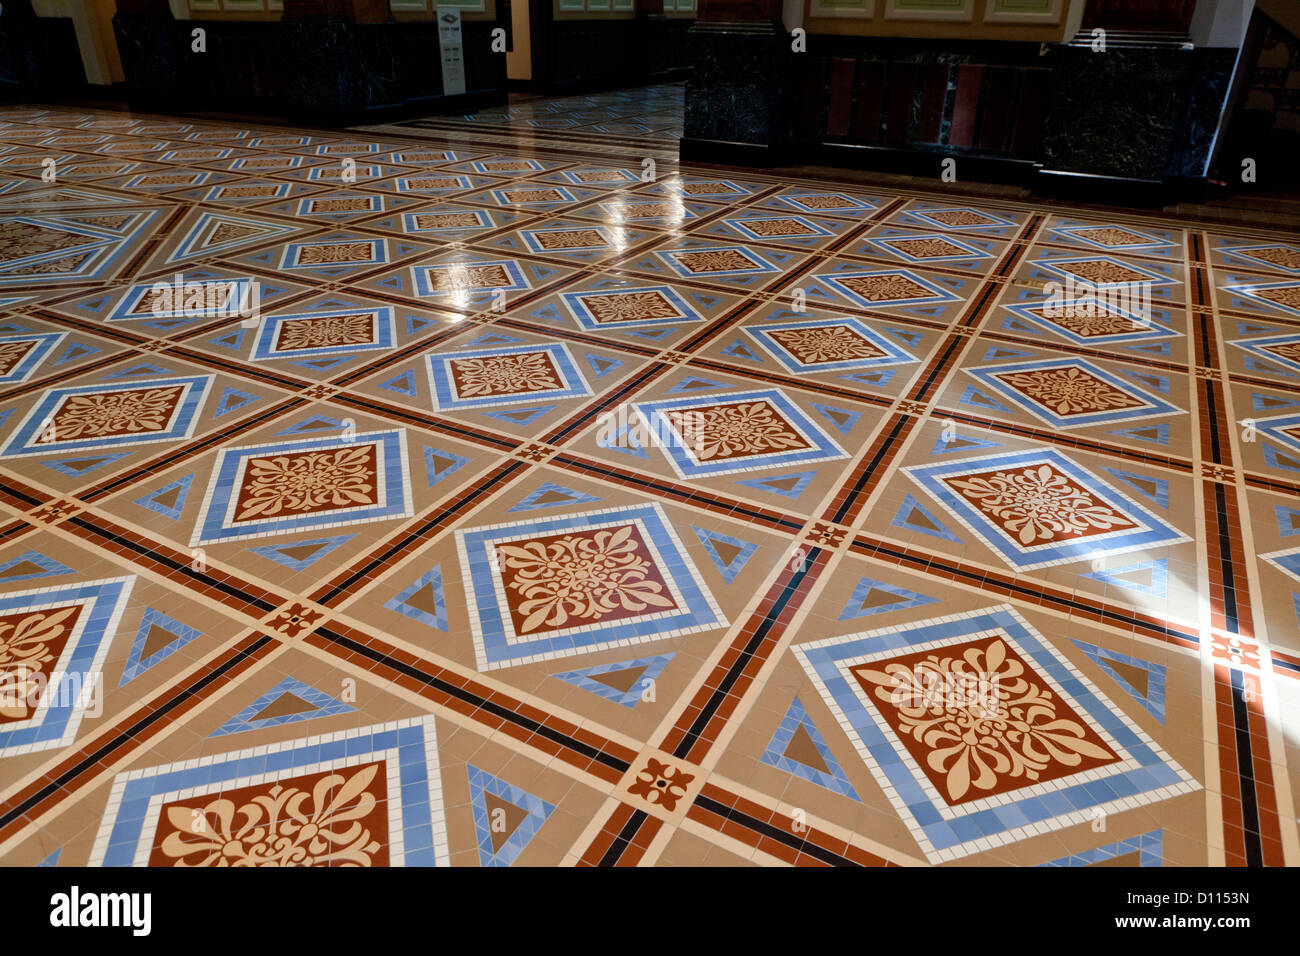 Ornate tile floor Stock Photo